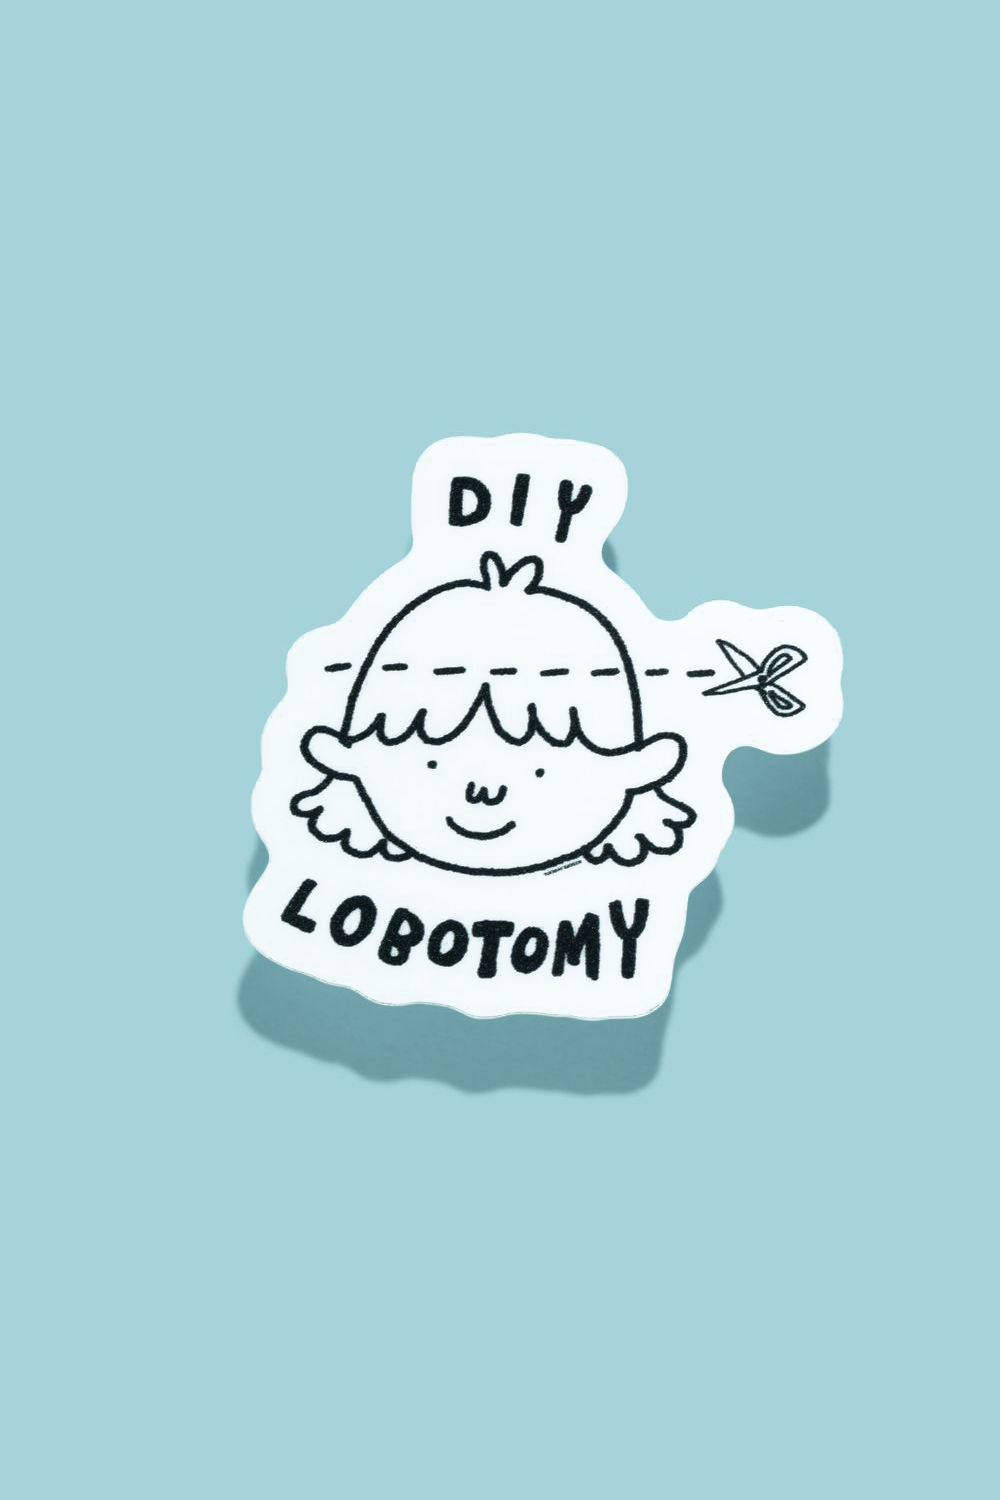 DIY Lobotomy Sticker